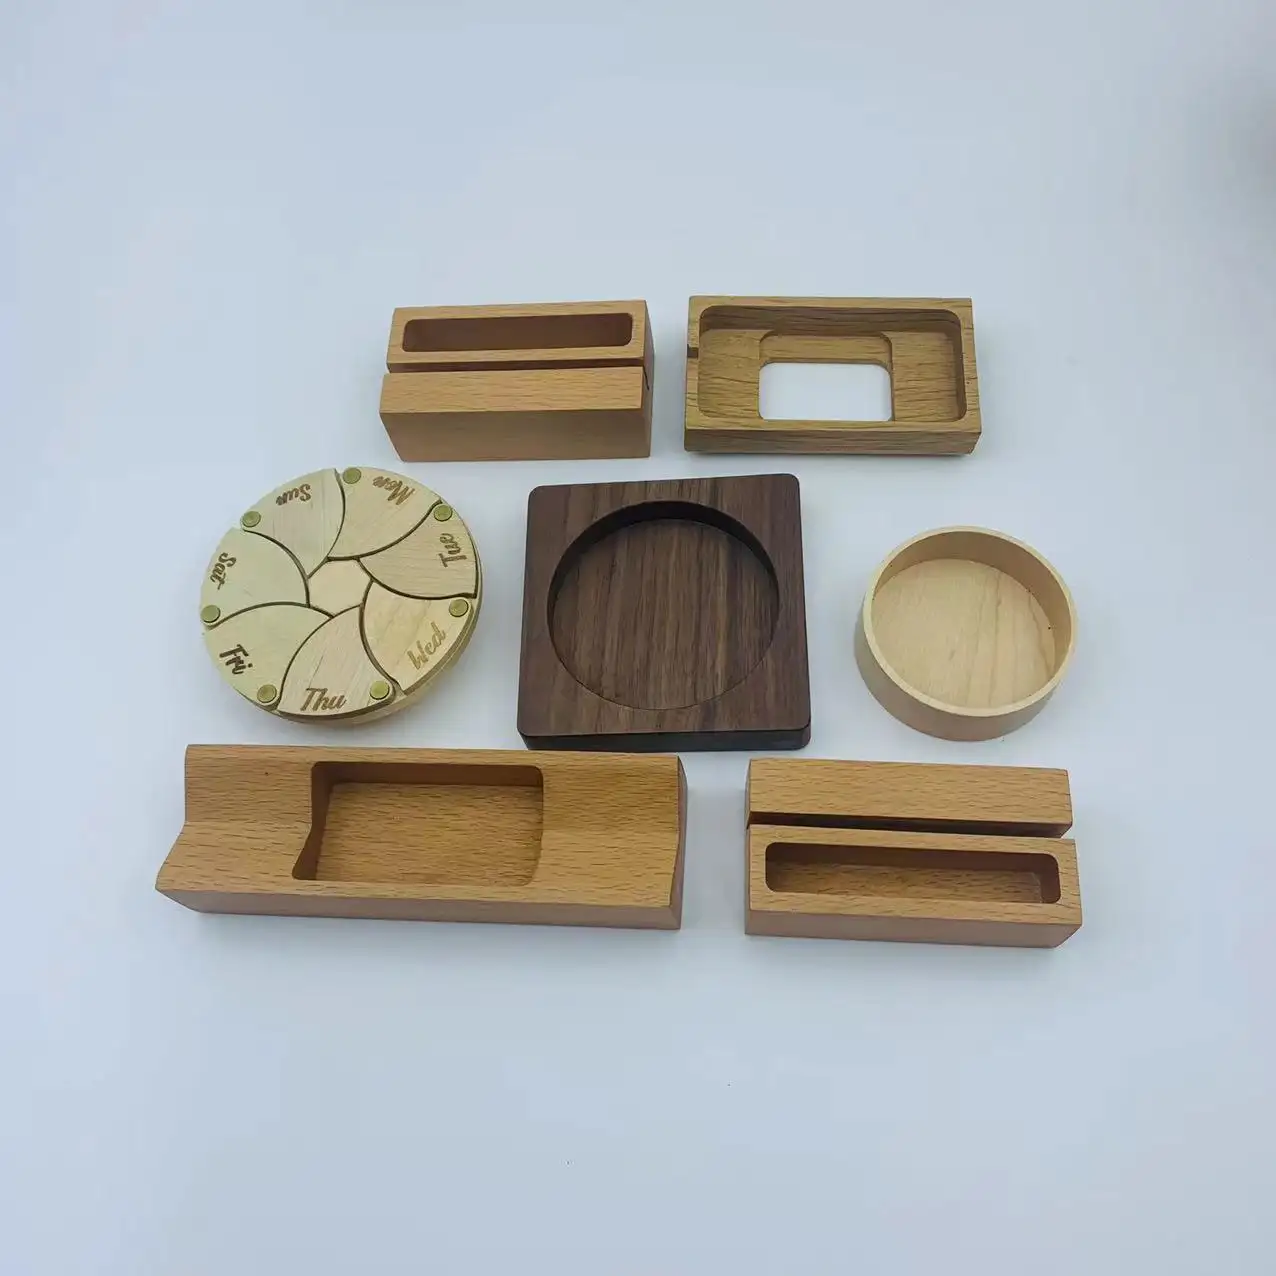 CNC traite toutes sortes de pièces artisanales en bois